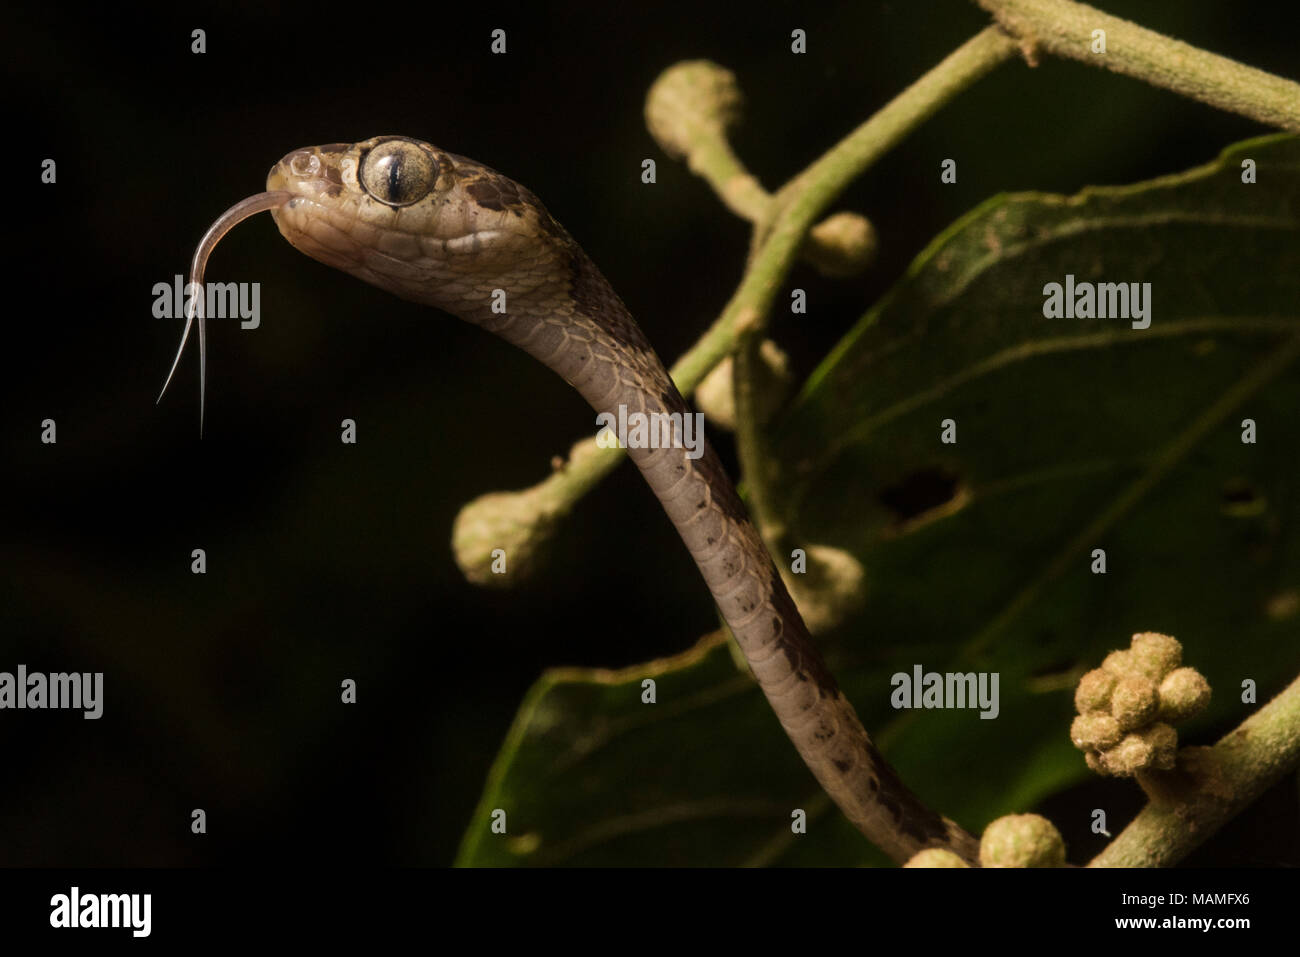 Un serpente notturno neotropicale, la struttura blunthead snake (Imantodes cenchoa). Questi serpenti si muovono attorno ad alberi e cespugli in cerca di cibo. Foto Stock